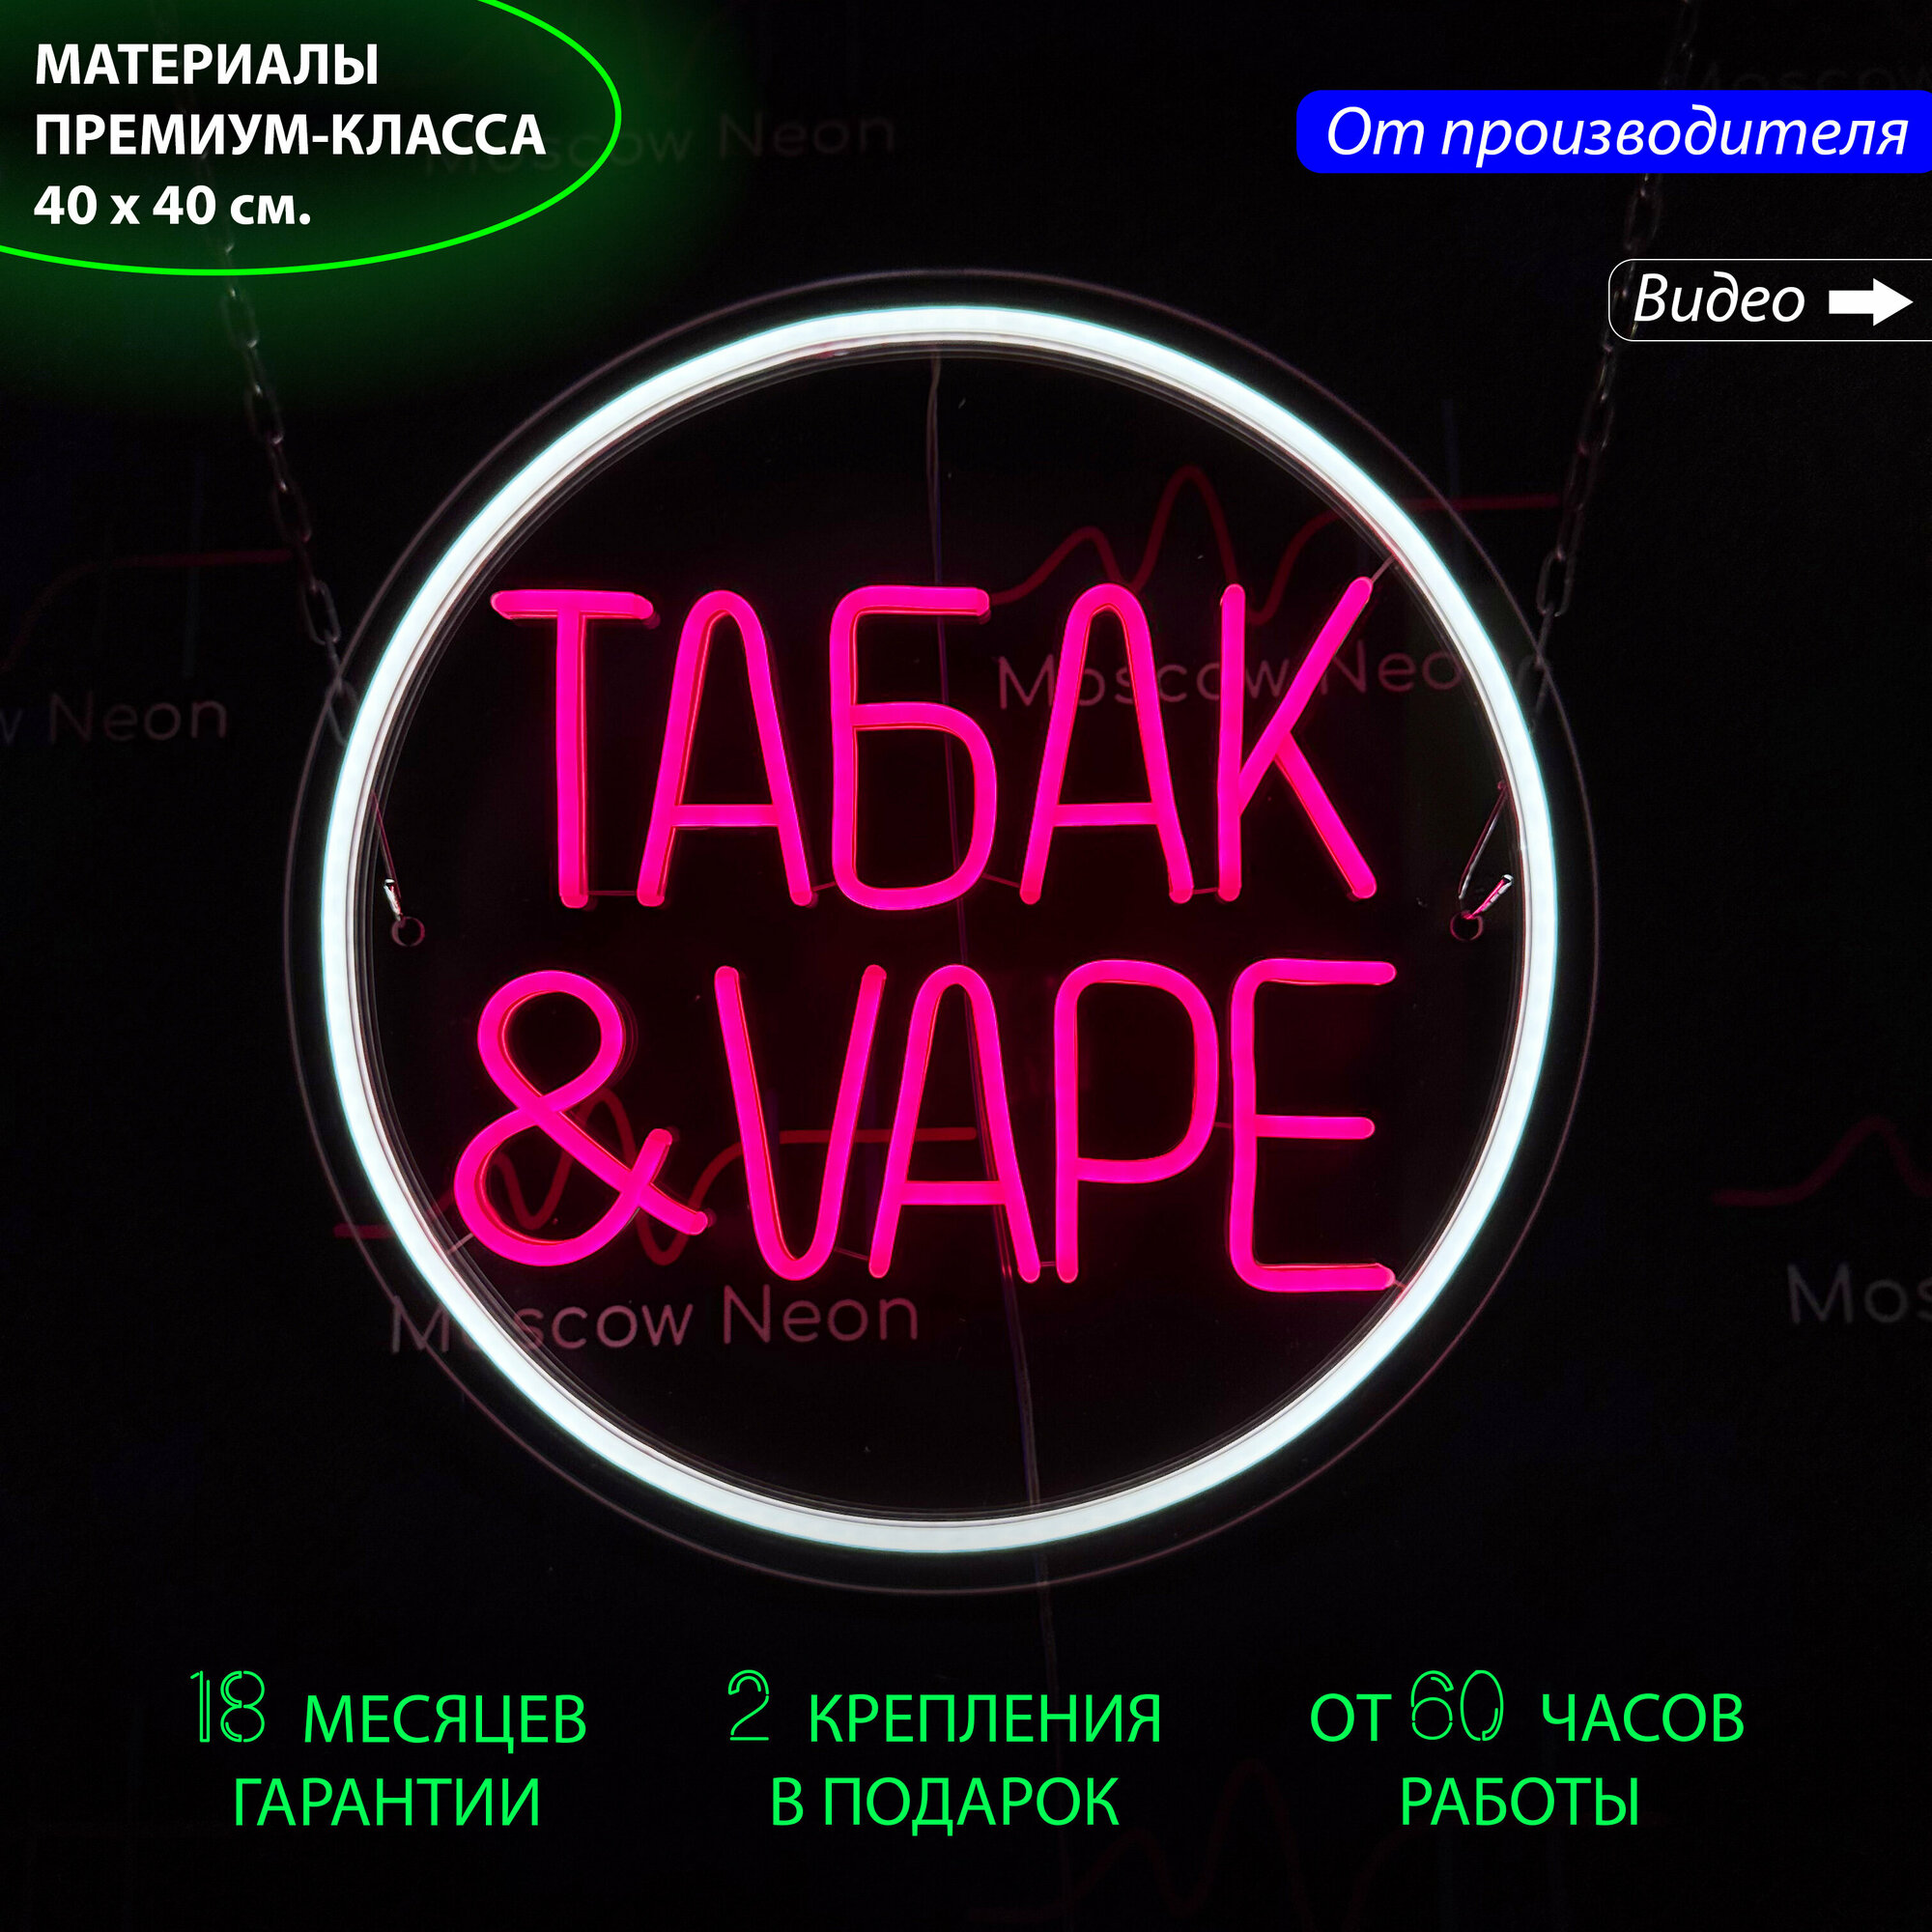 Неоновая вывеска для магазина табачных изделий "Табак & Vape", 40 х 40 см. / светильник из гибкого неона - фотография № 1